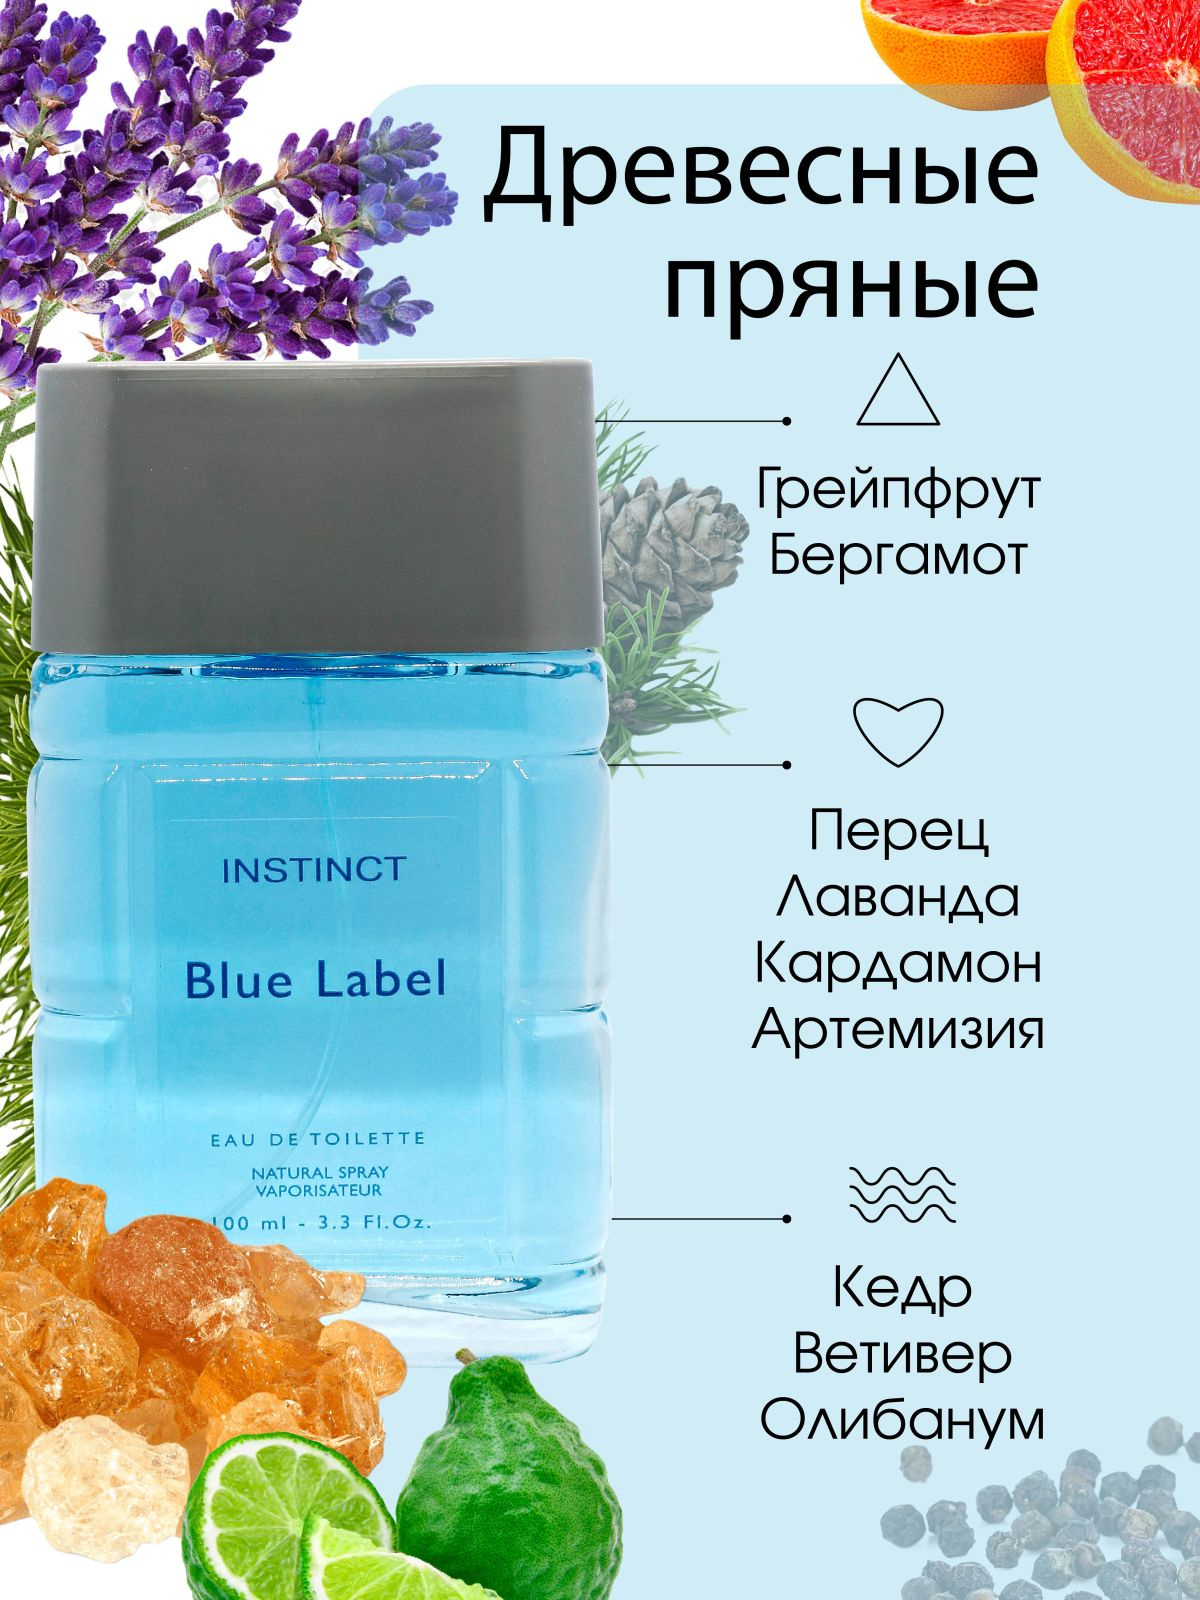 https://www.ozon.ru/product/delta-parfyum-muzhskaya-instinct-million-tualetnaya-voda-100-ml-499911690/